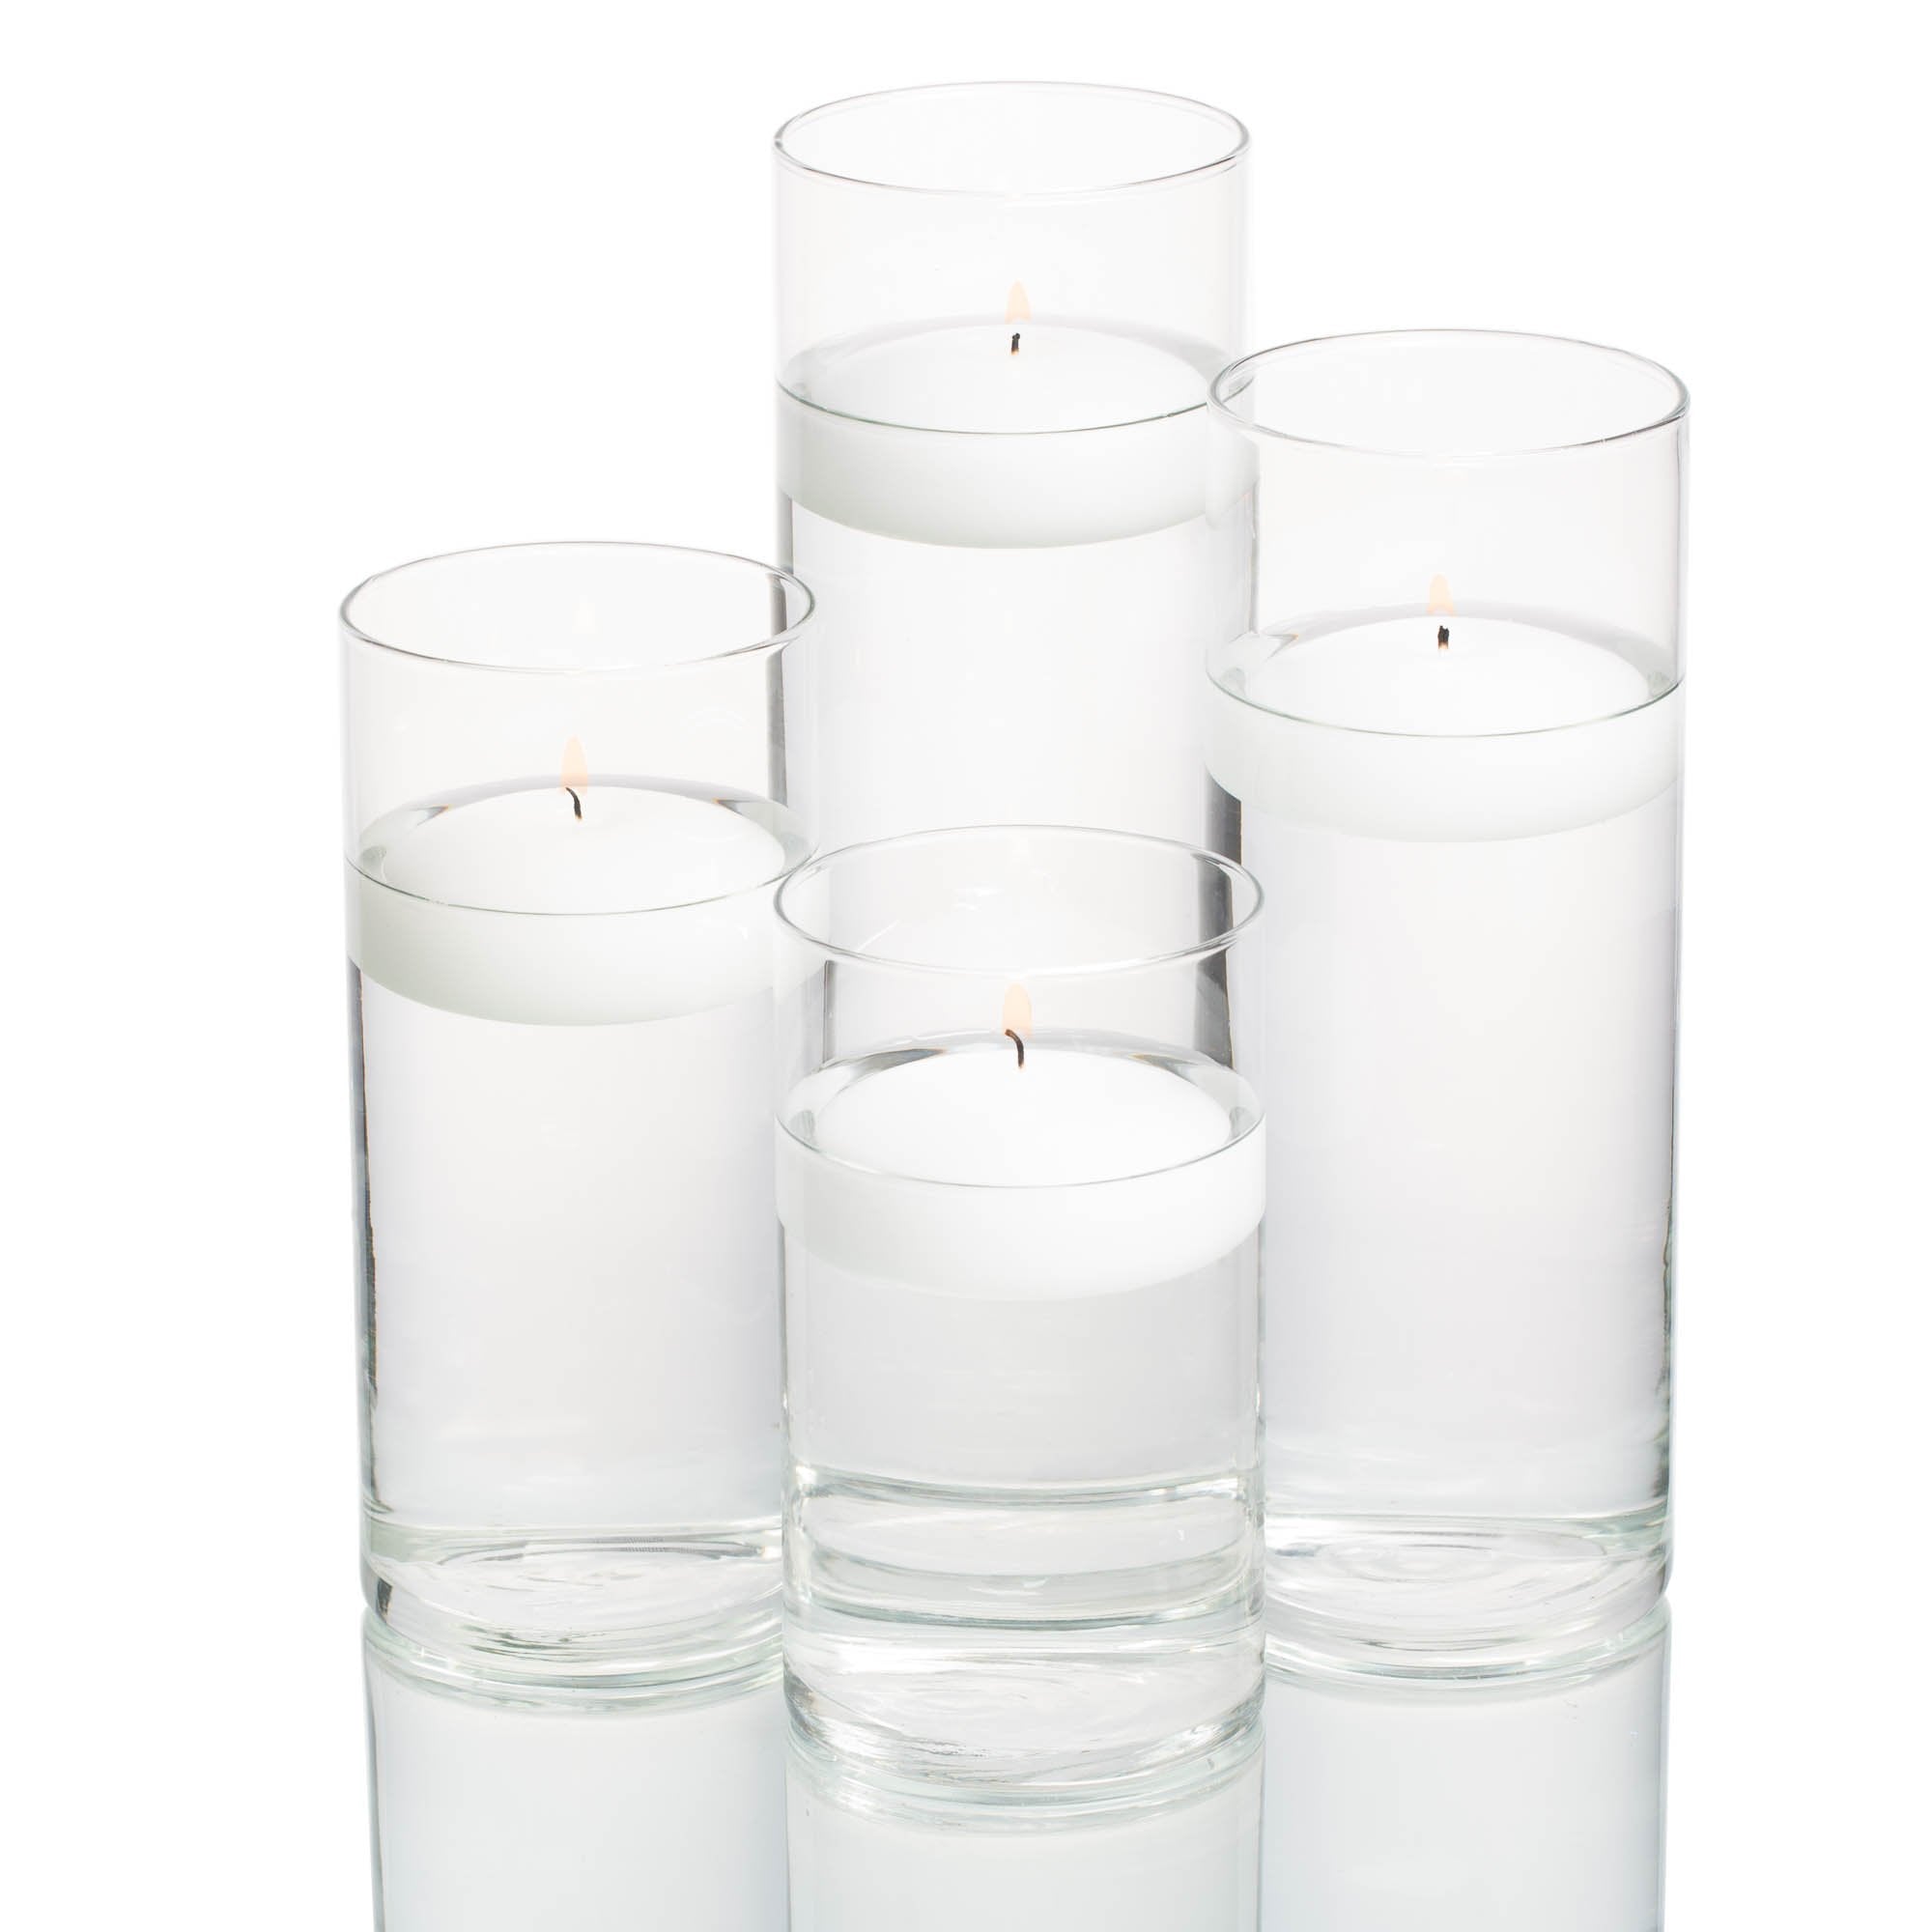 richland floating candles eastland cylinder holders set of 4